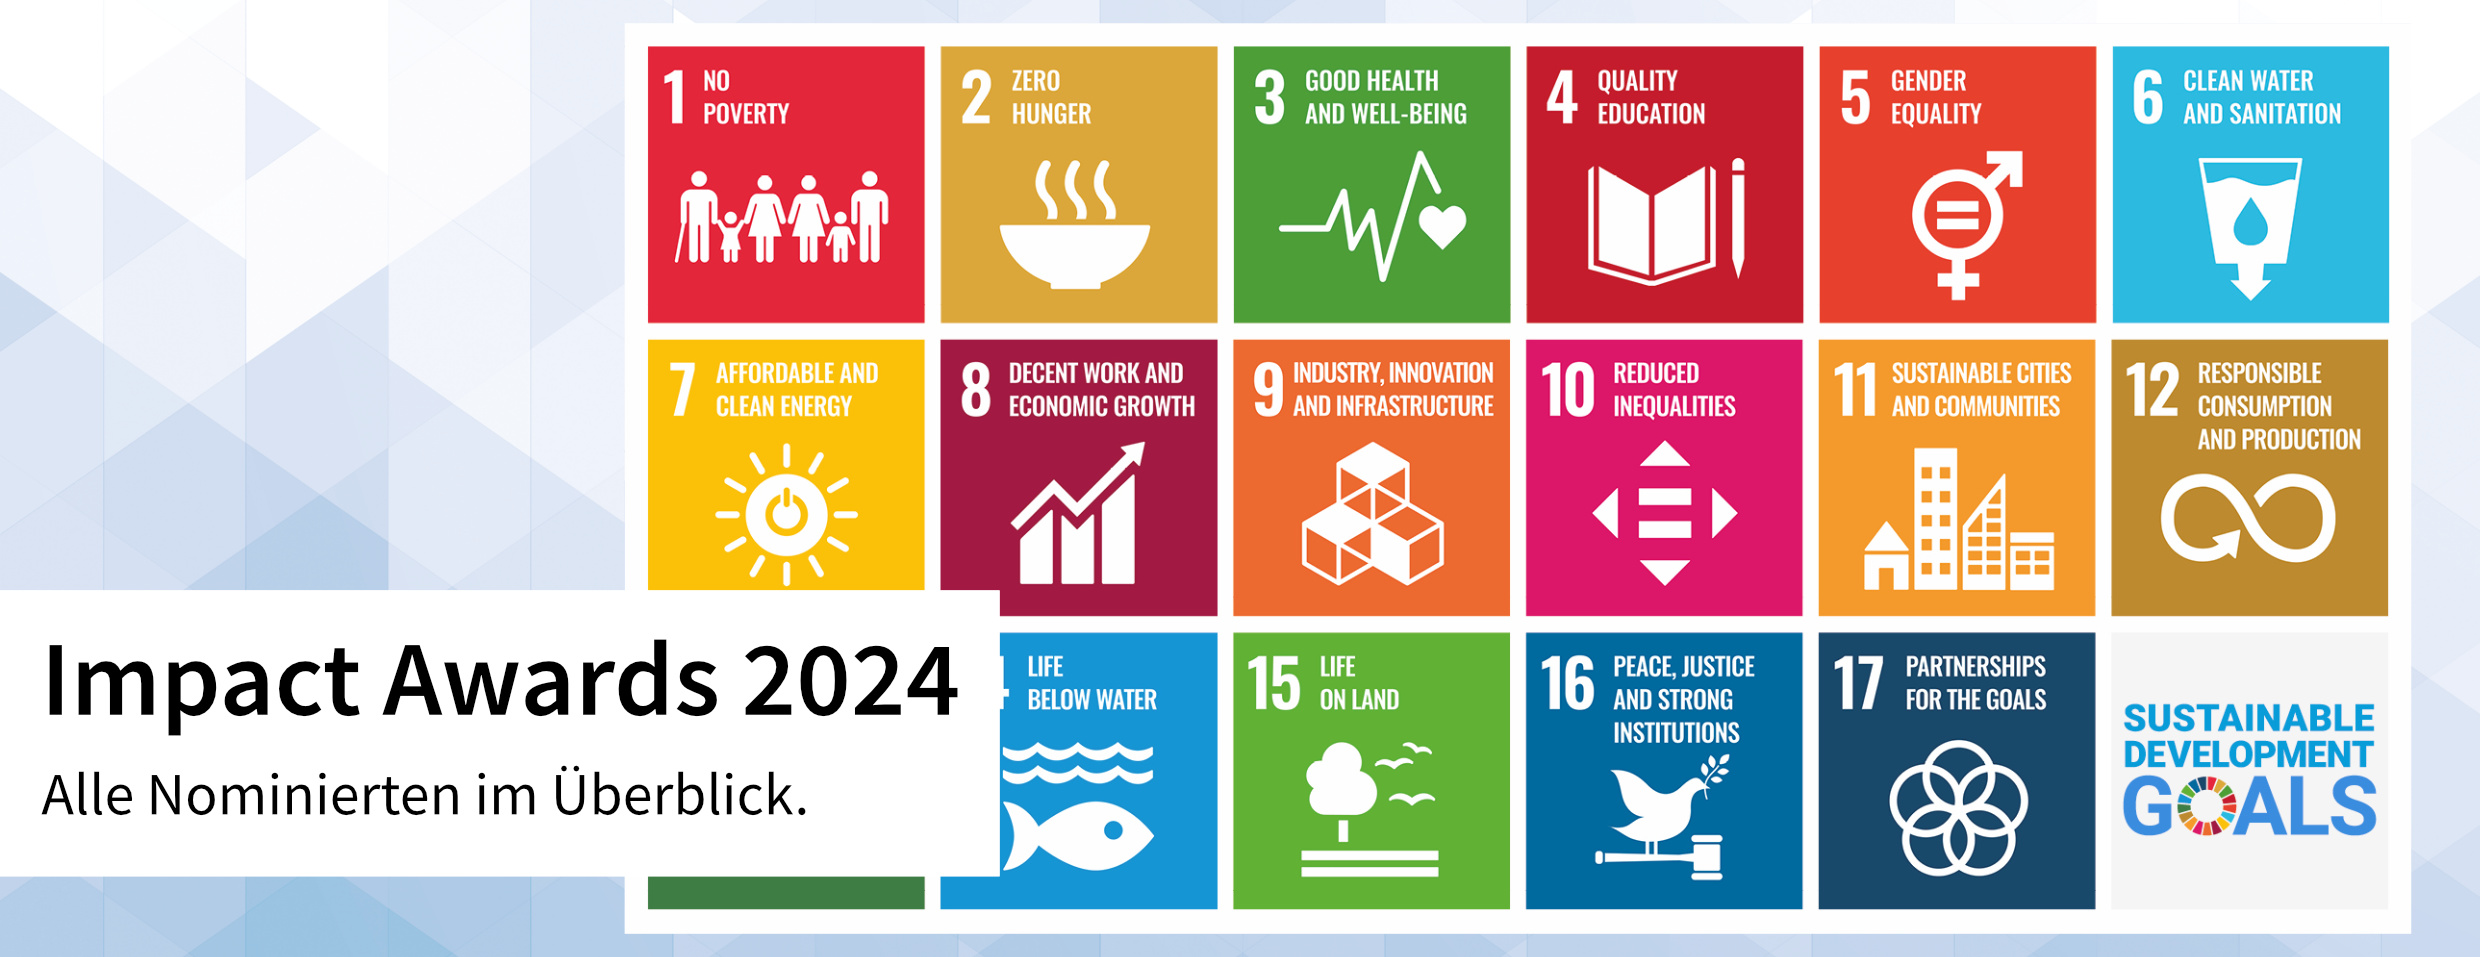 SDG Impact Awards 2024_DE